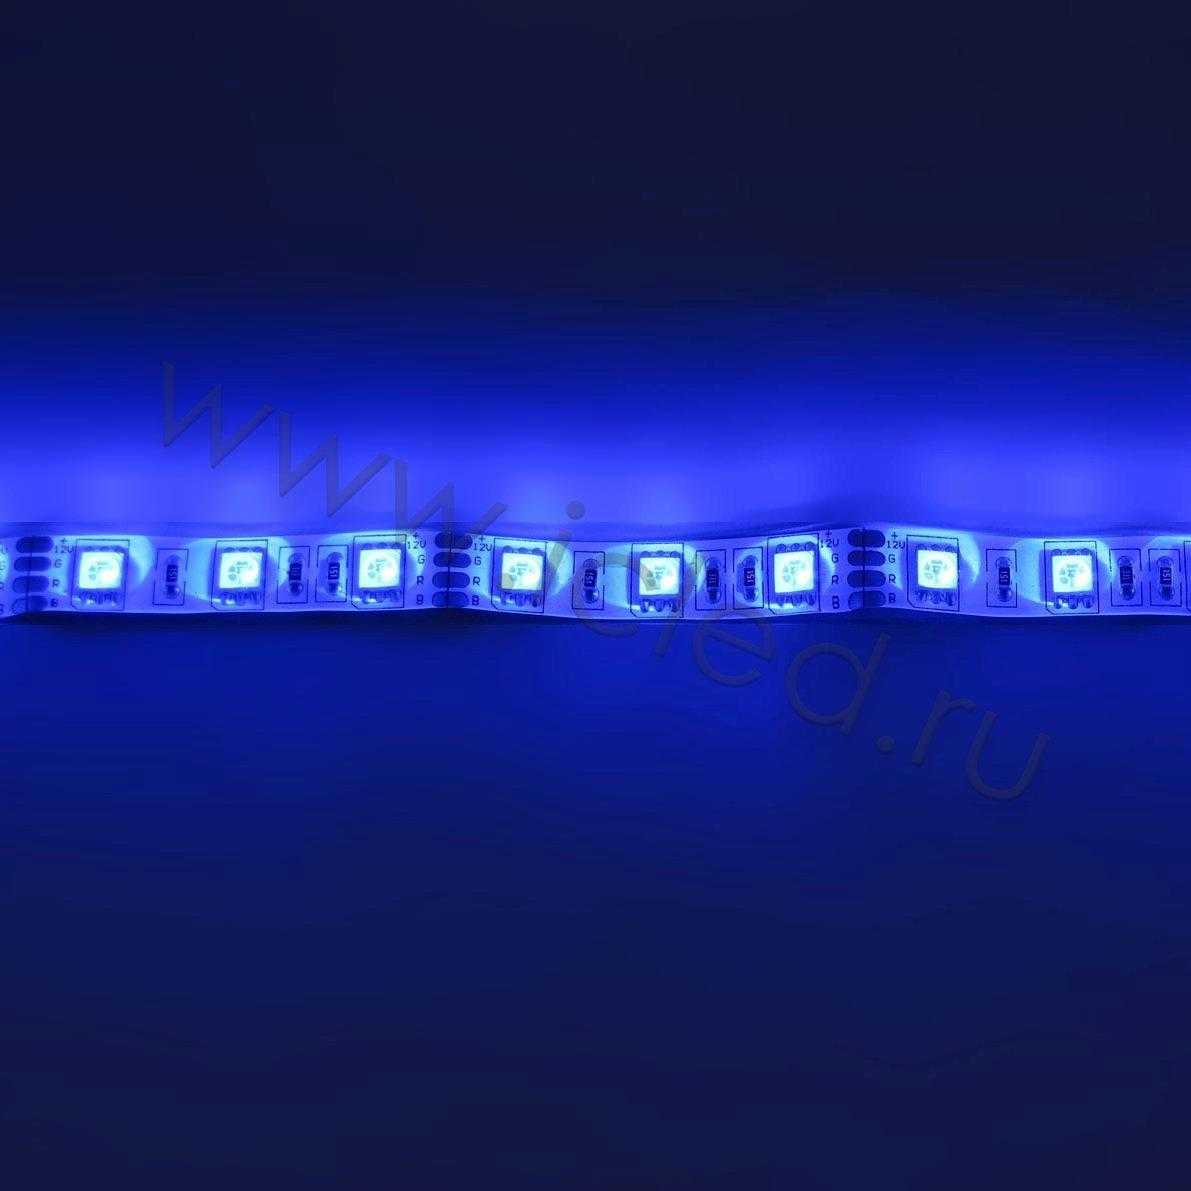 Влагозащищенные светодиодные ленты Светодиодная лента Standart class, 5050, 60led/m, RGB, 12V, IP65 Icled